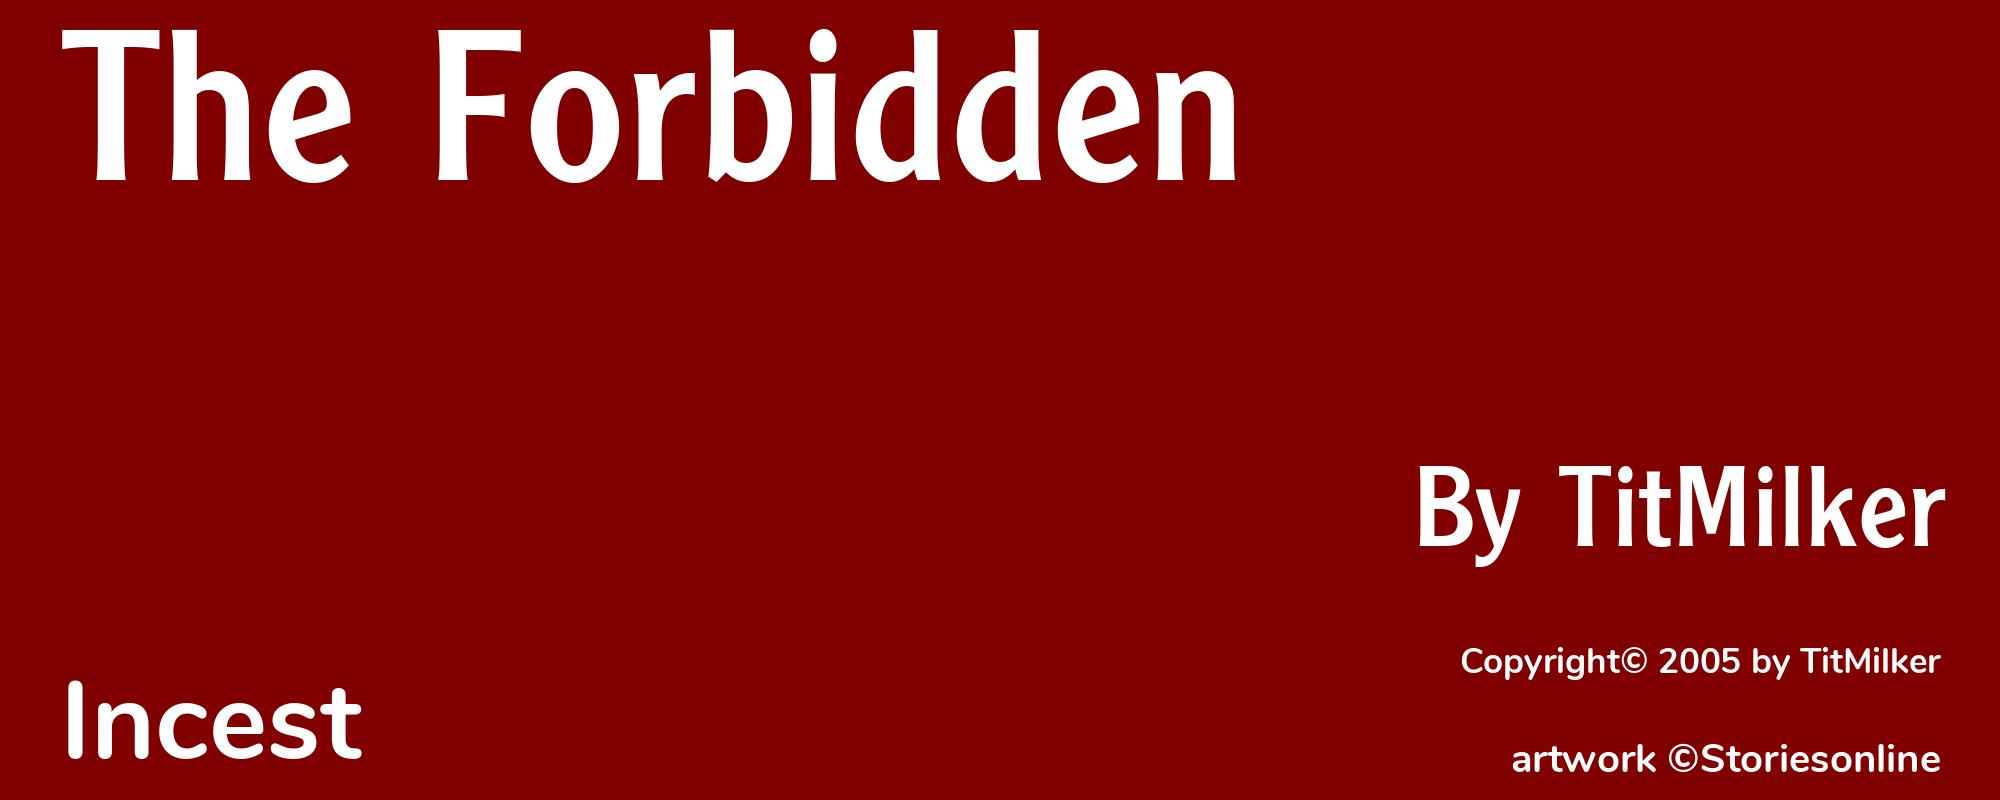 The Forbidden - Cover